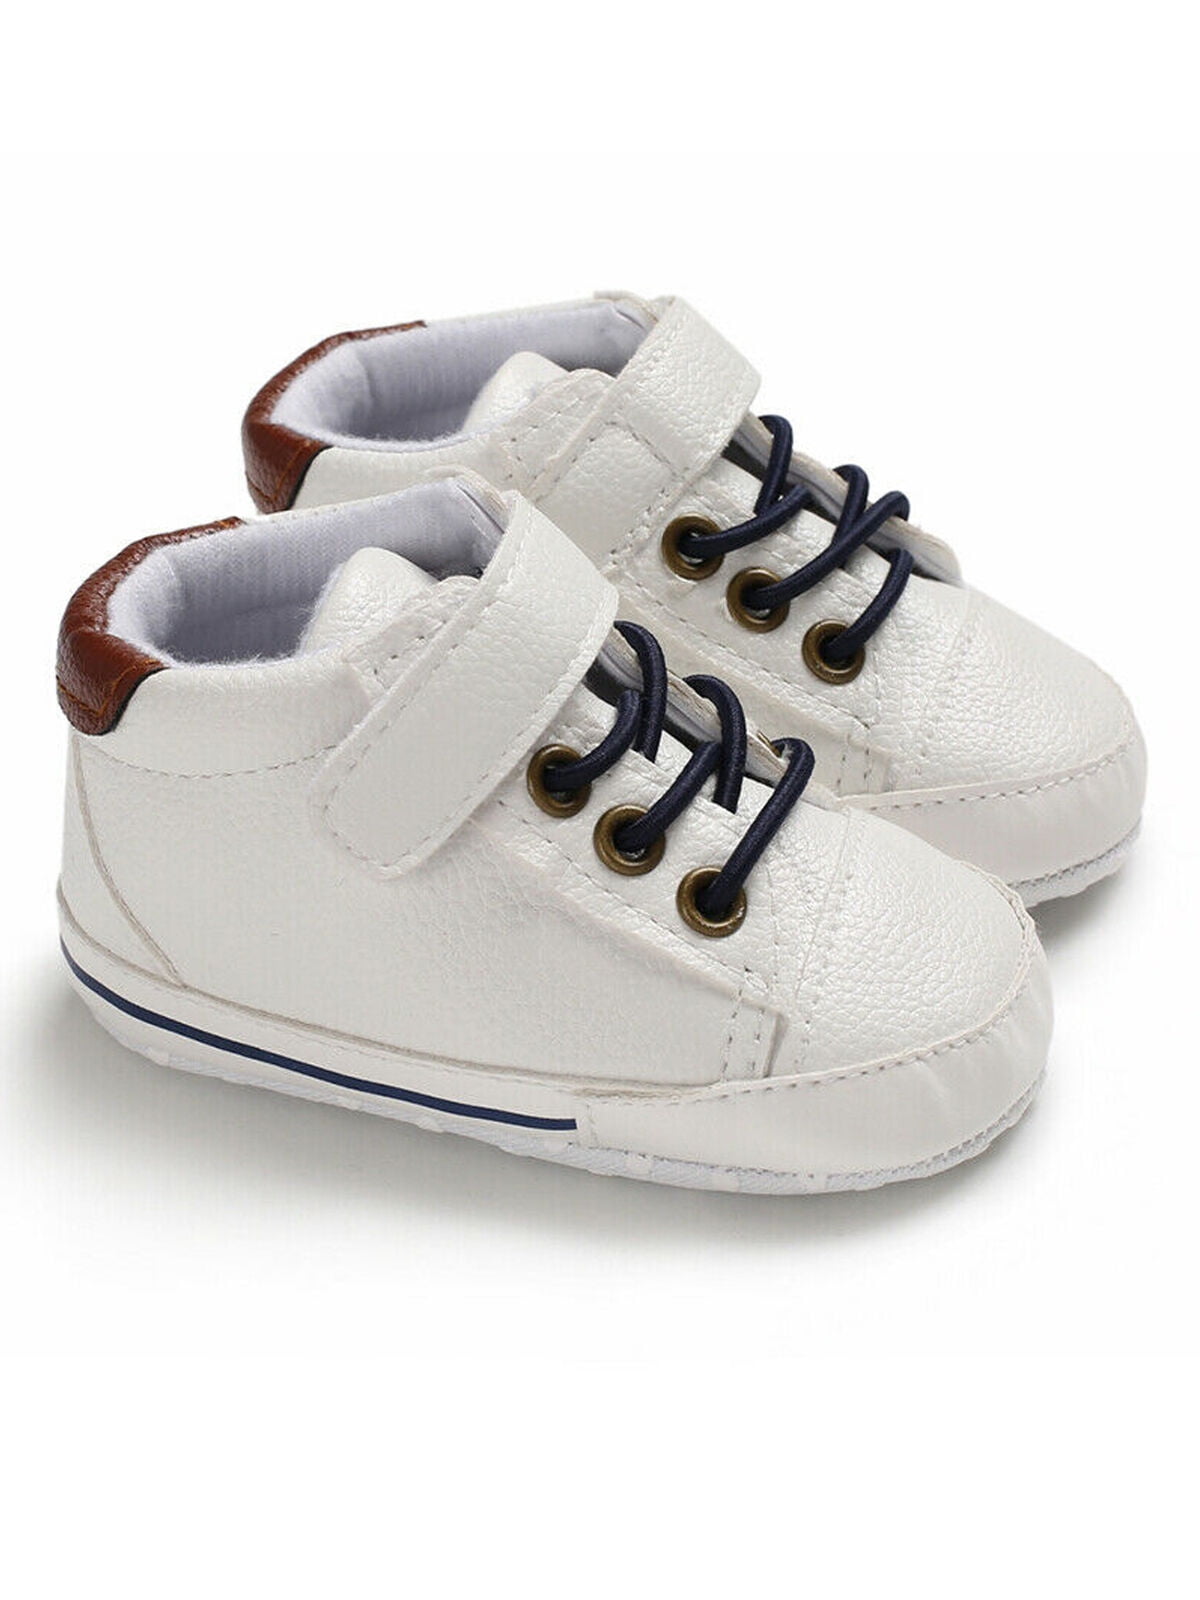 Soft Sole Newborn Kids Baby Boy Pre-Walker Crib Shoes Sneakers 0-18 ...